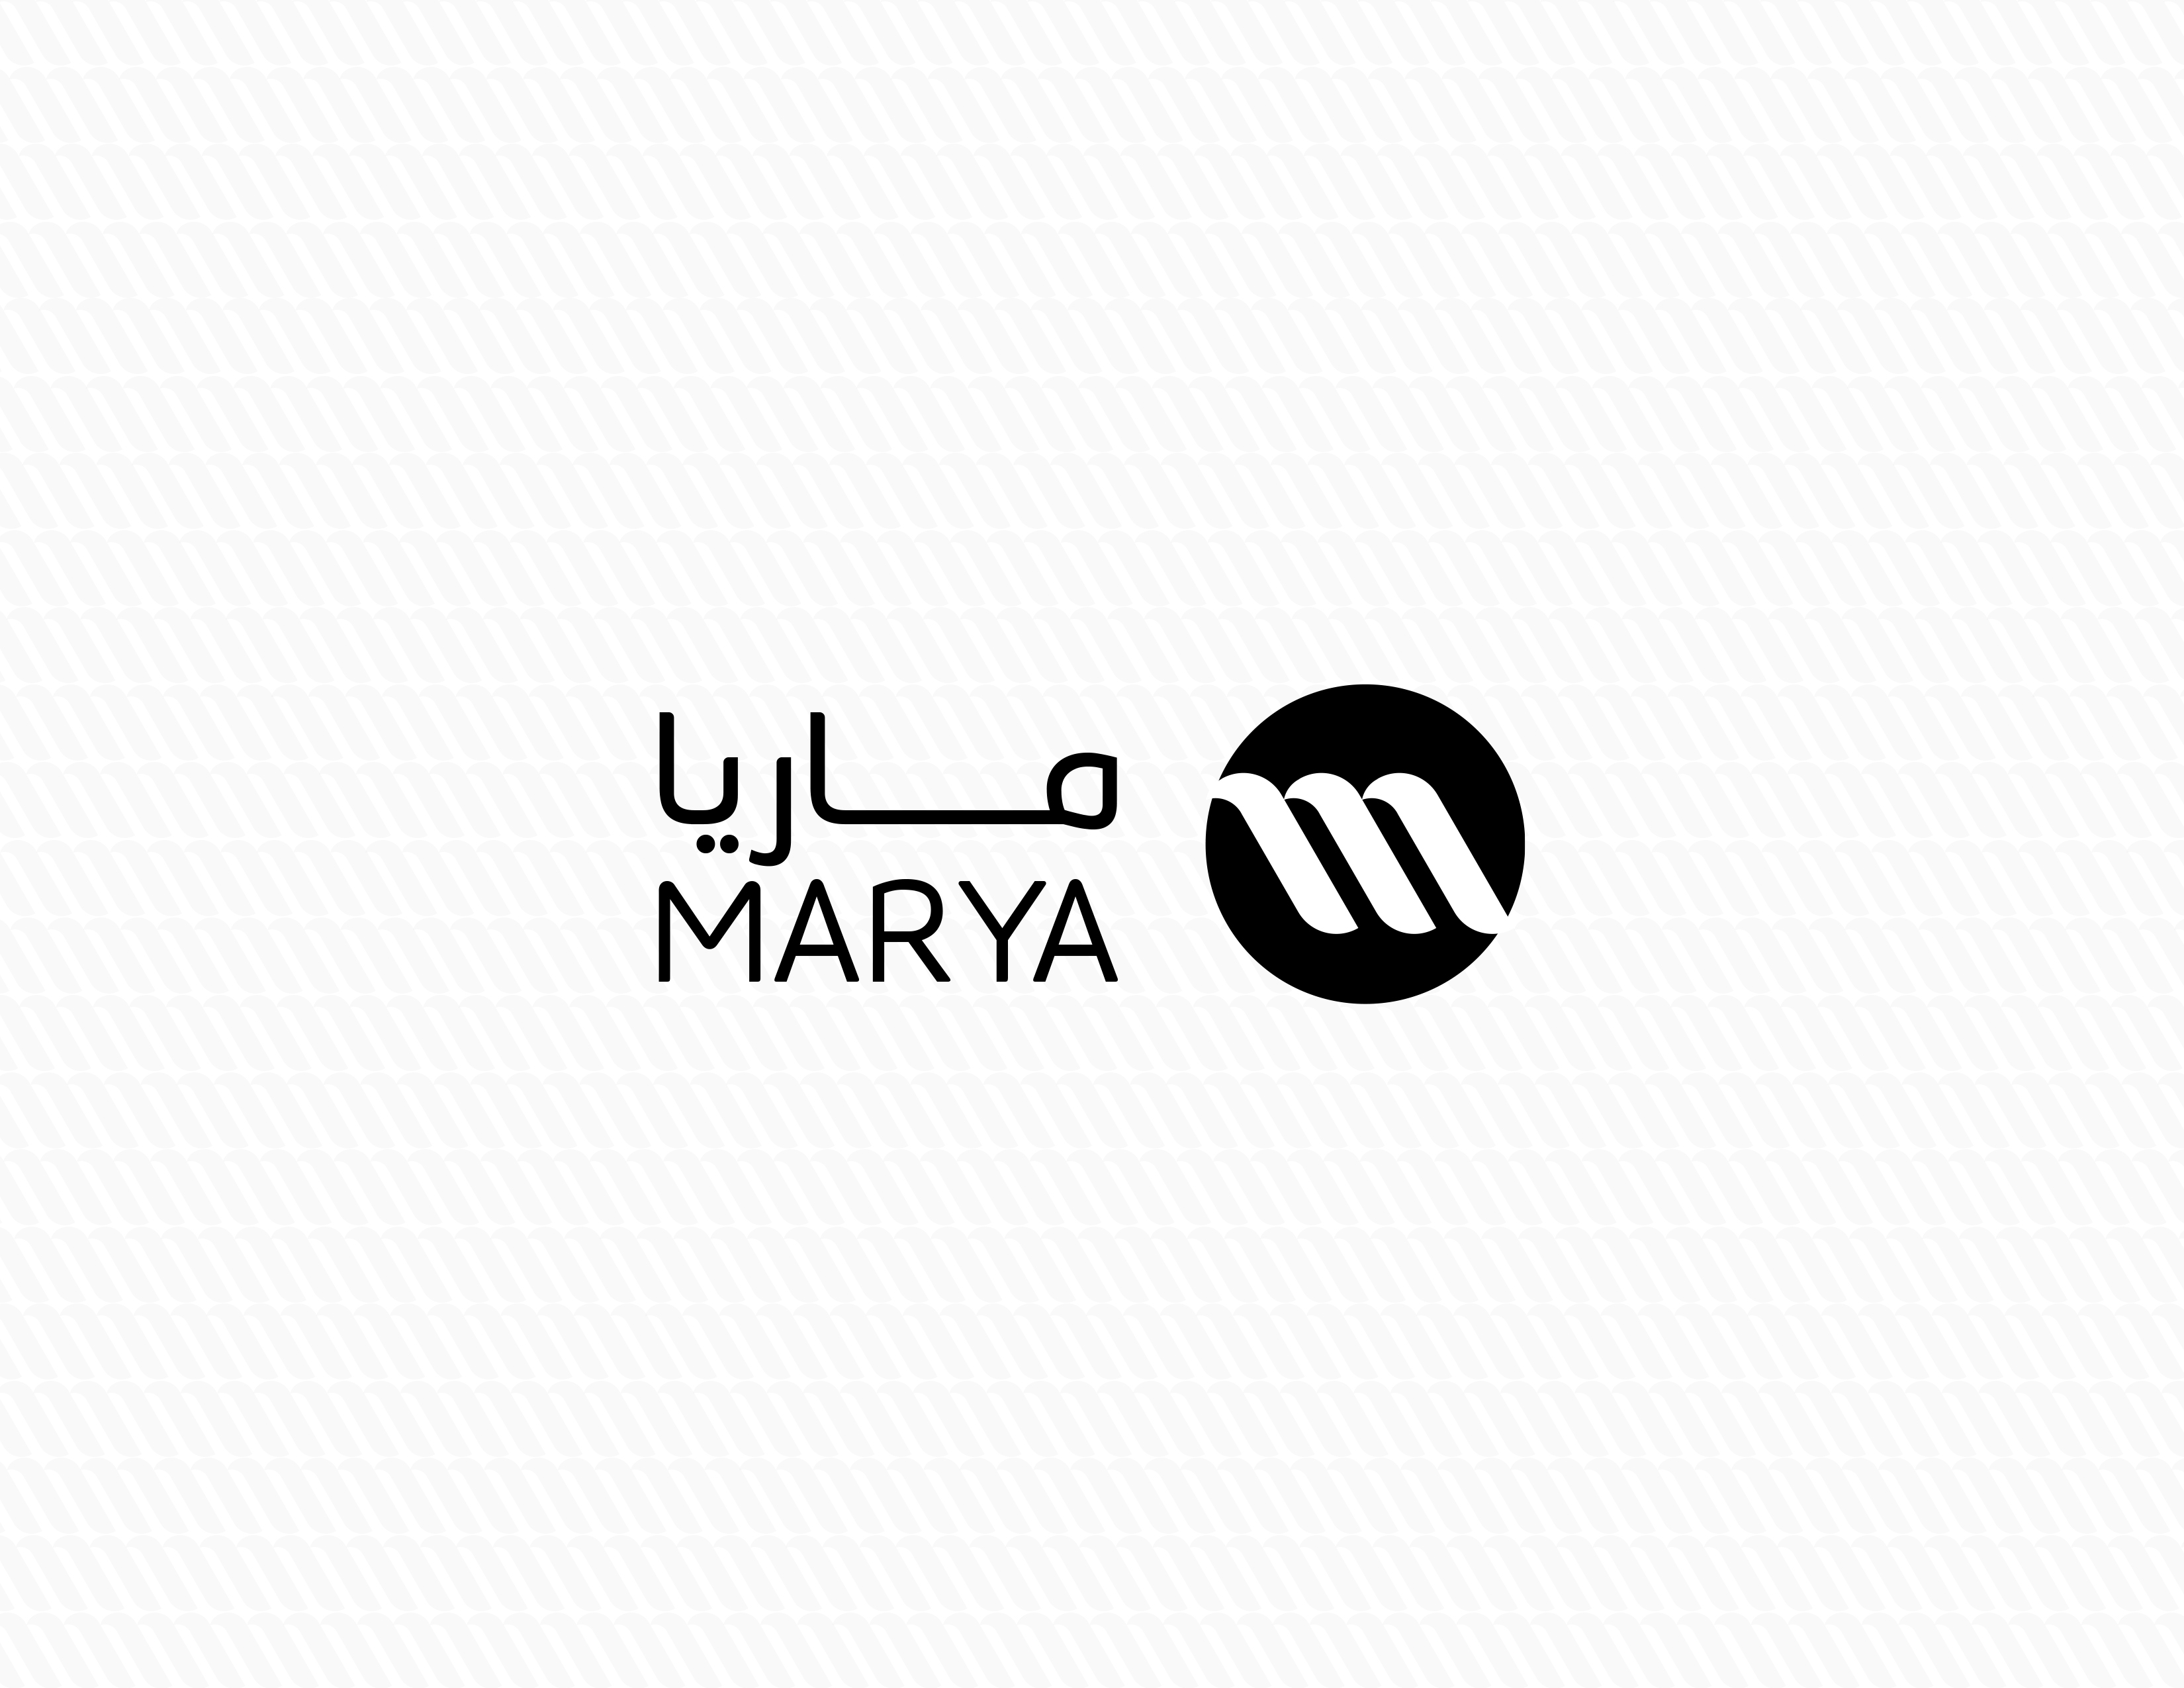 ماريا - تصميم هوية الشركات